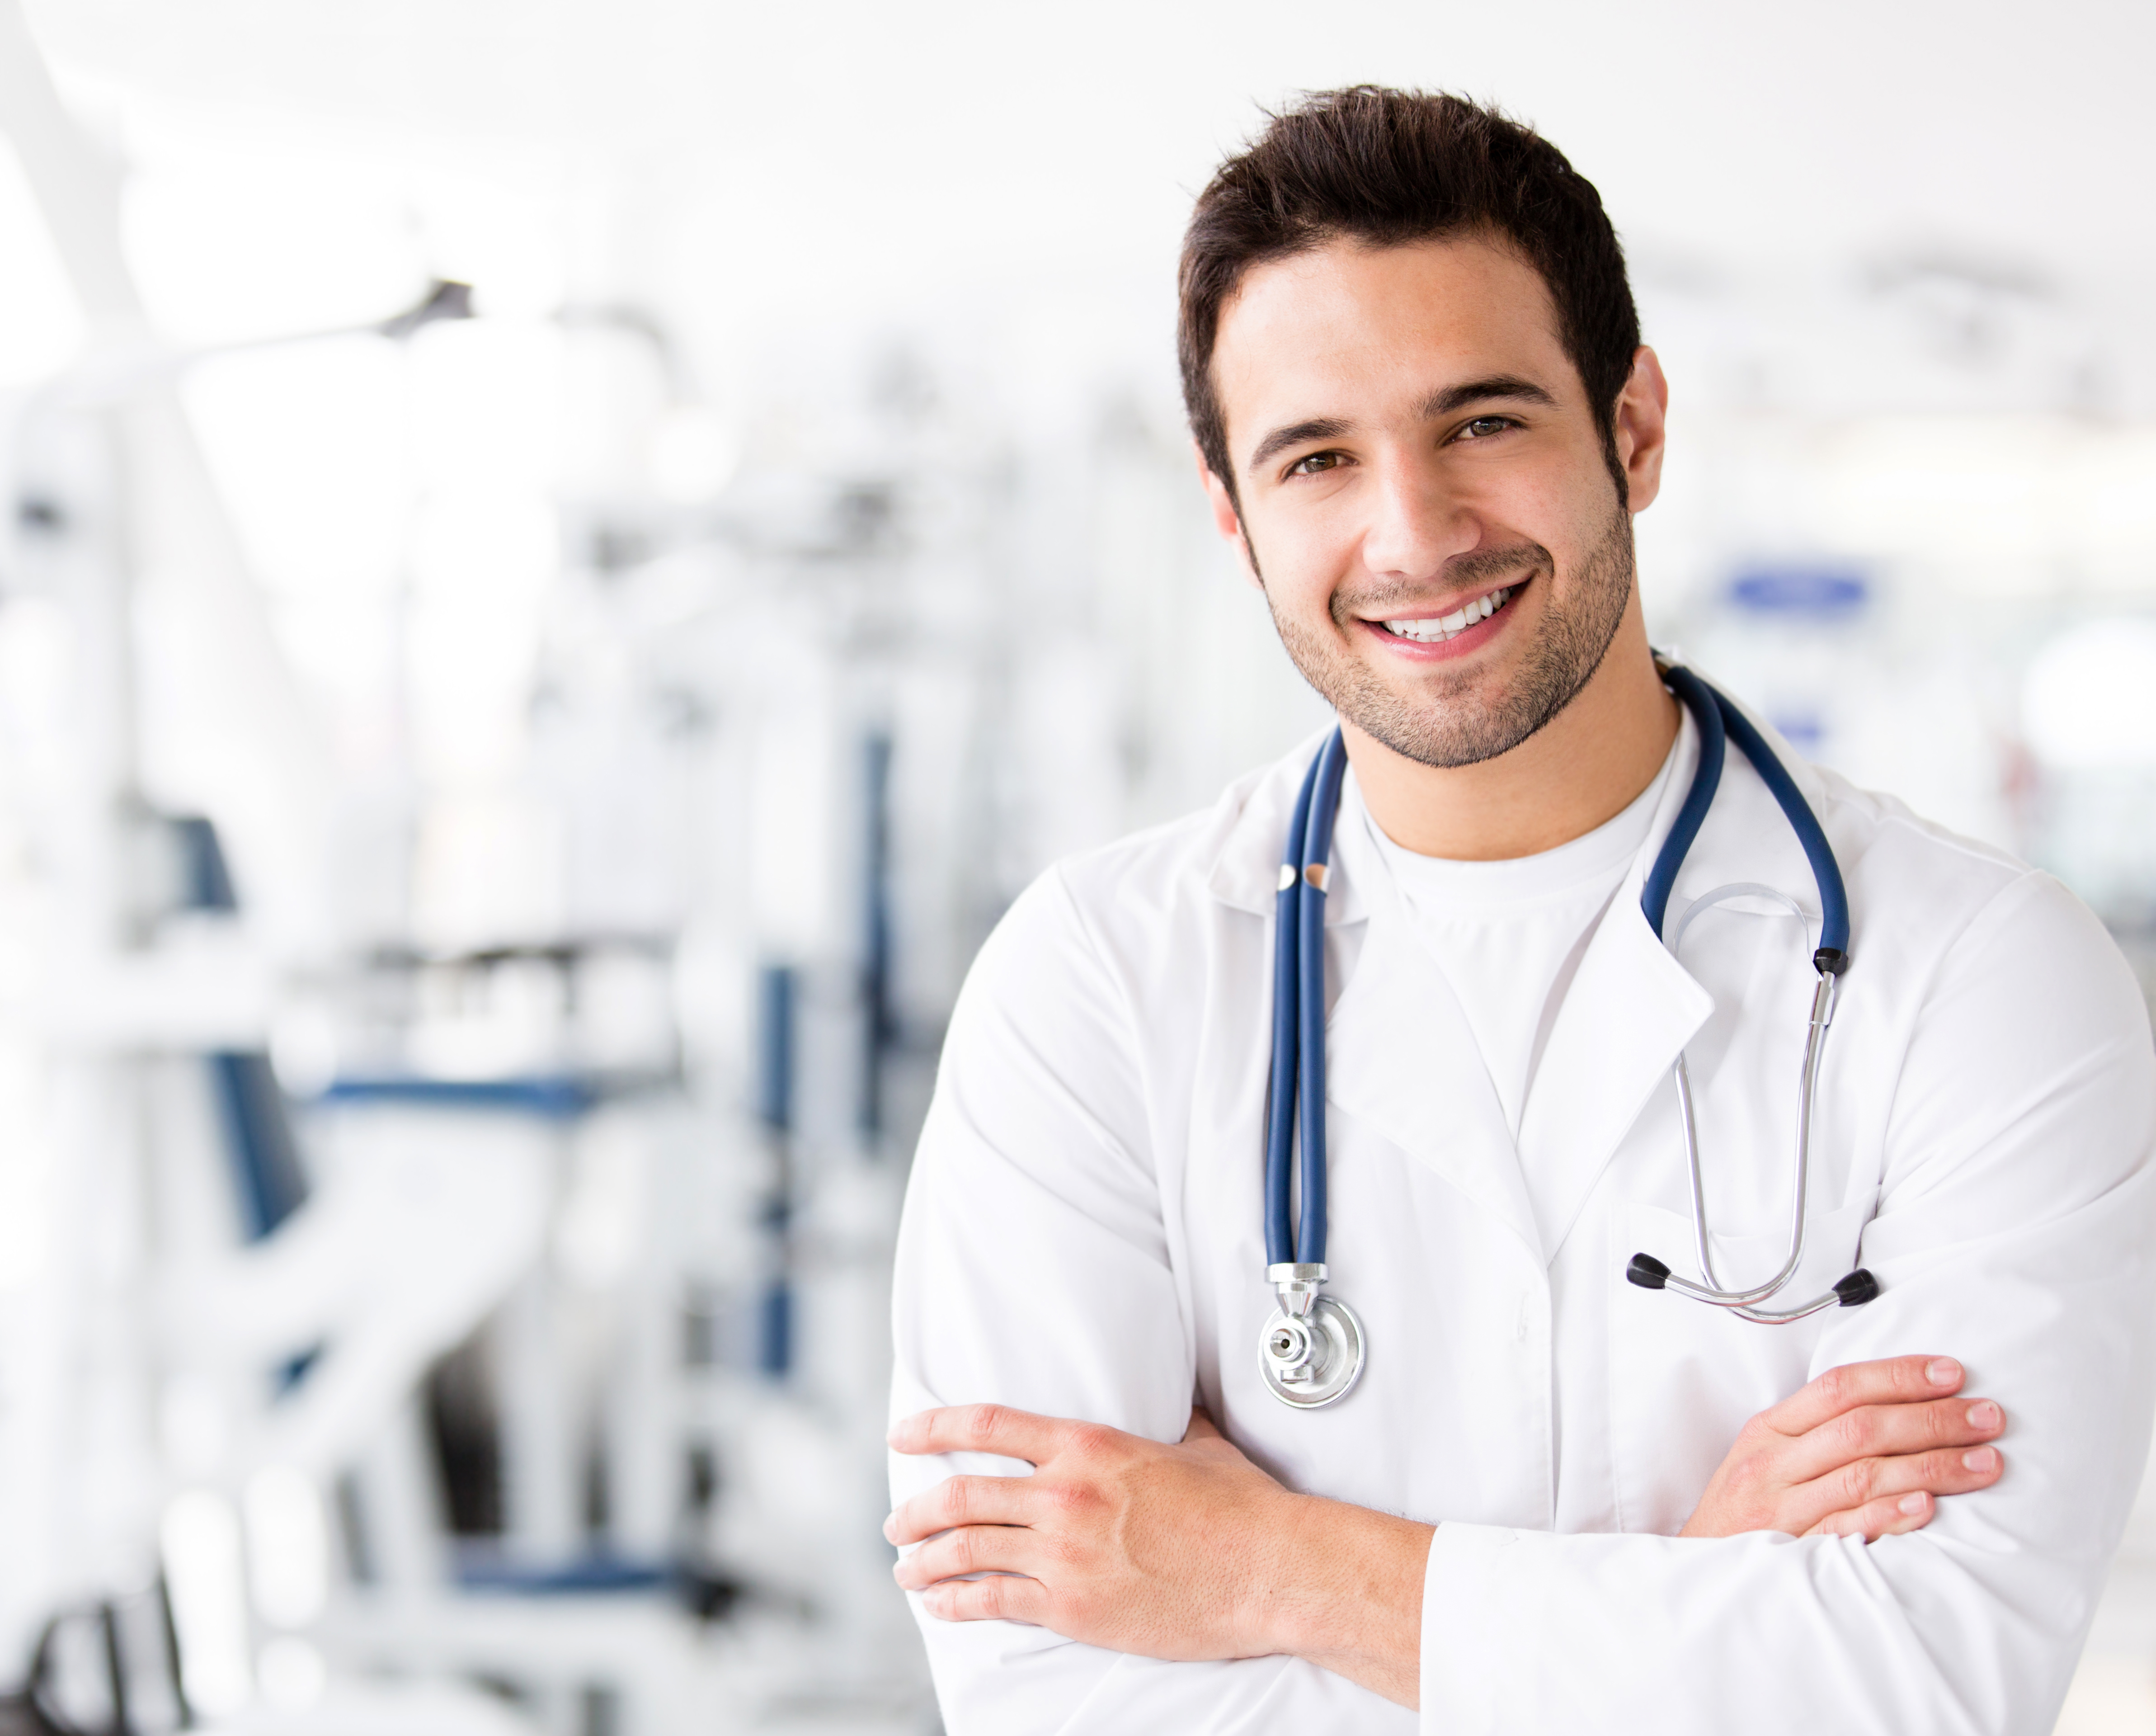 Ein junger männlicher Arzt lächelt | Quelle: Shutterstock